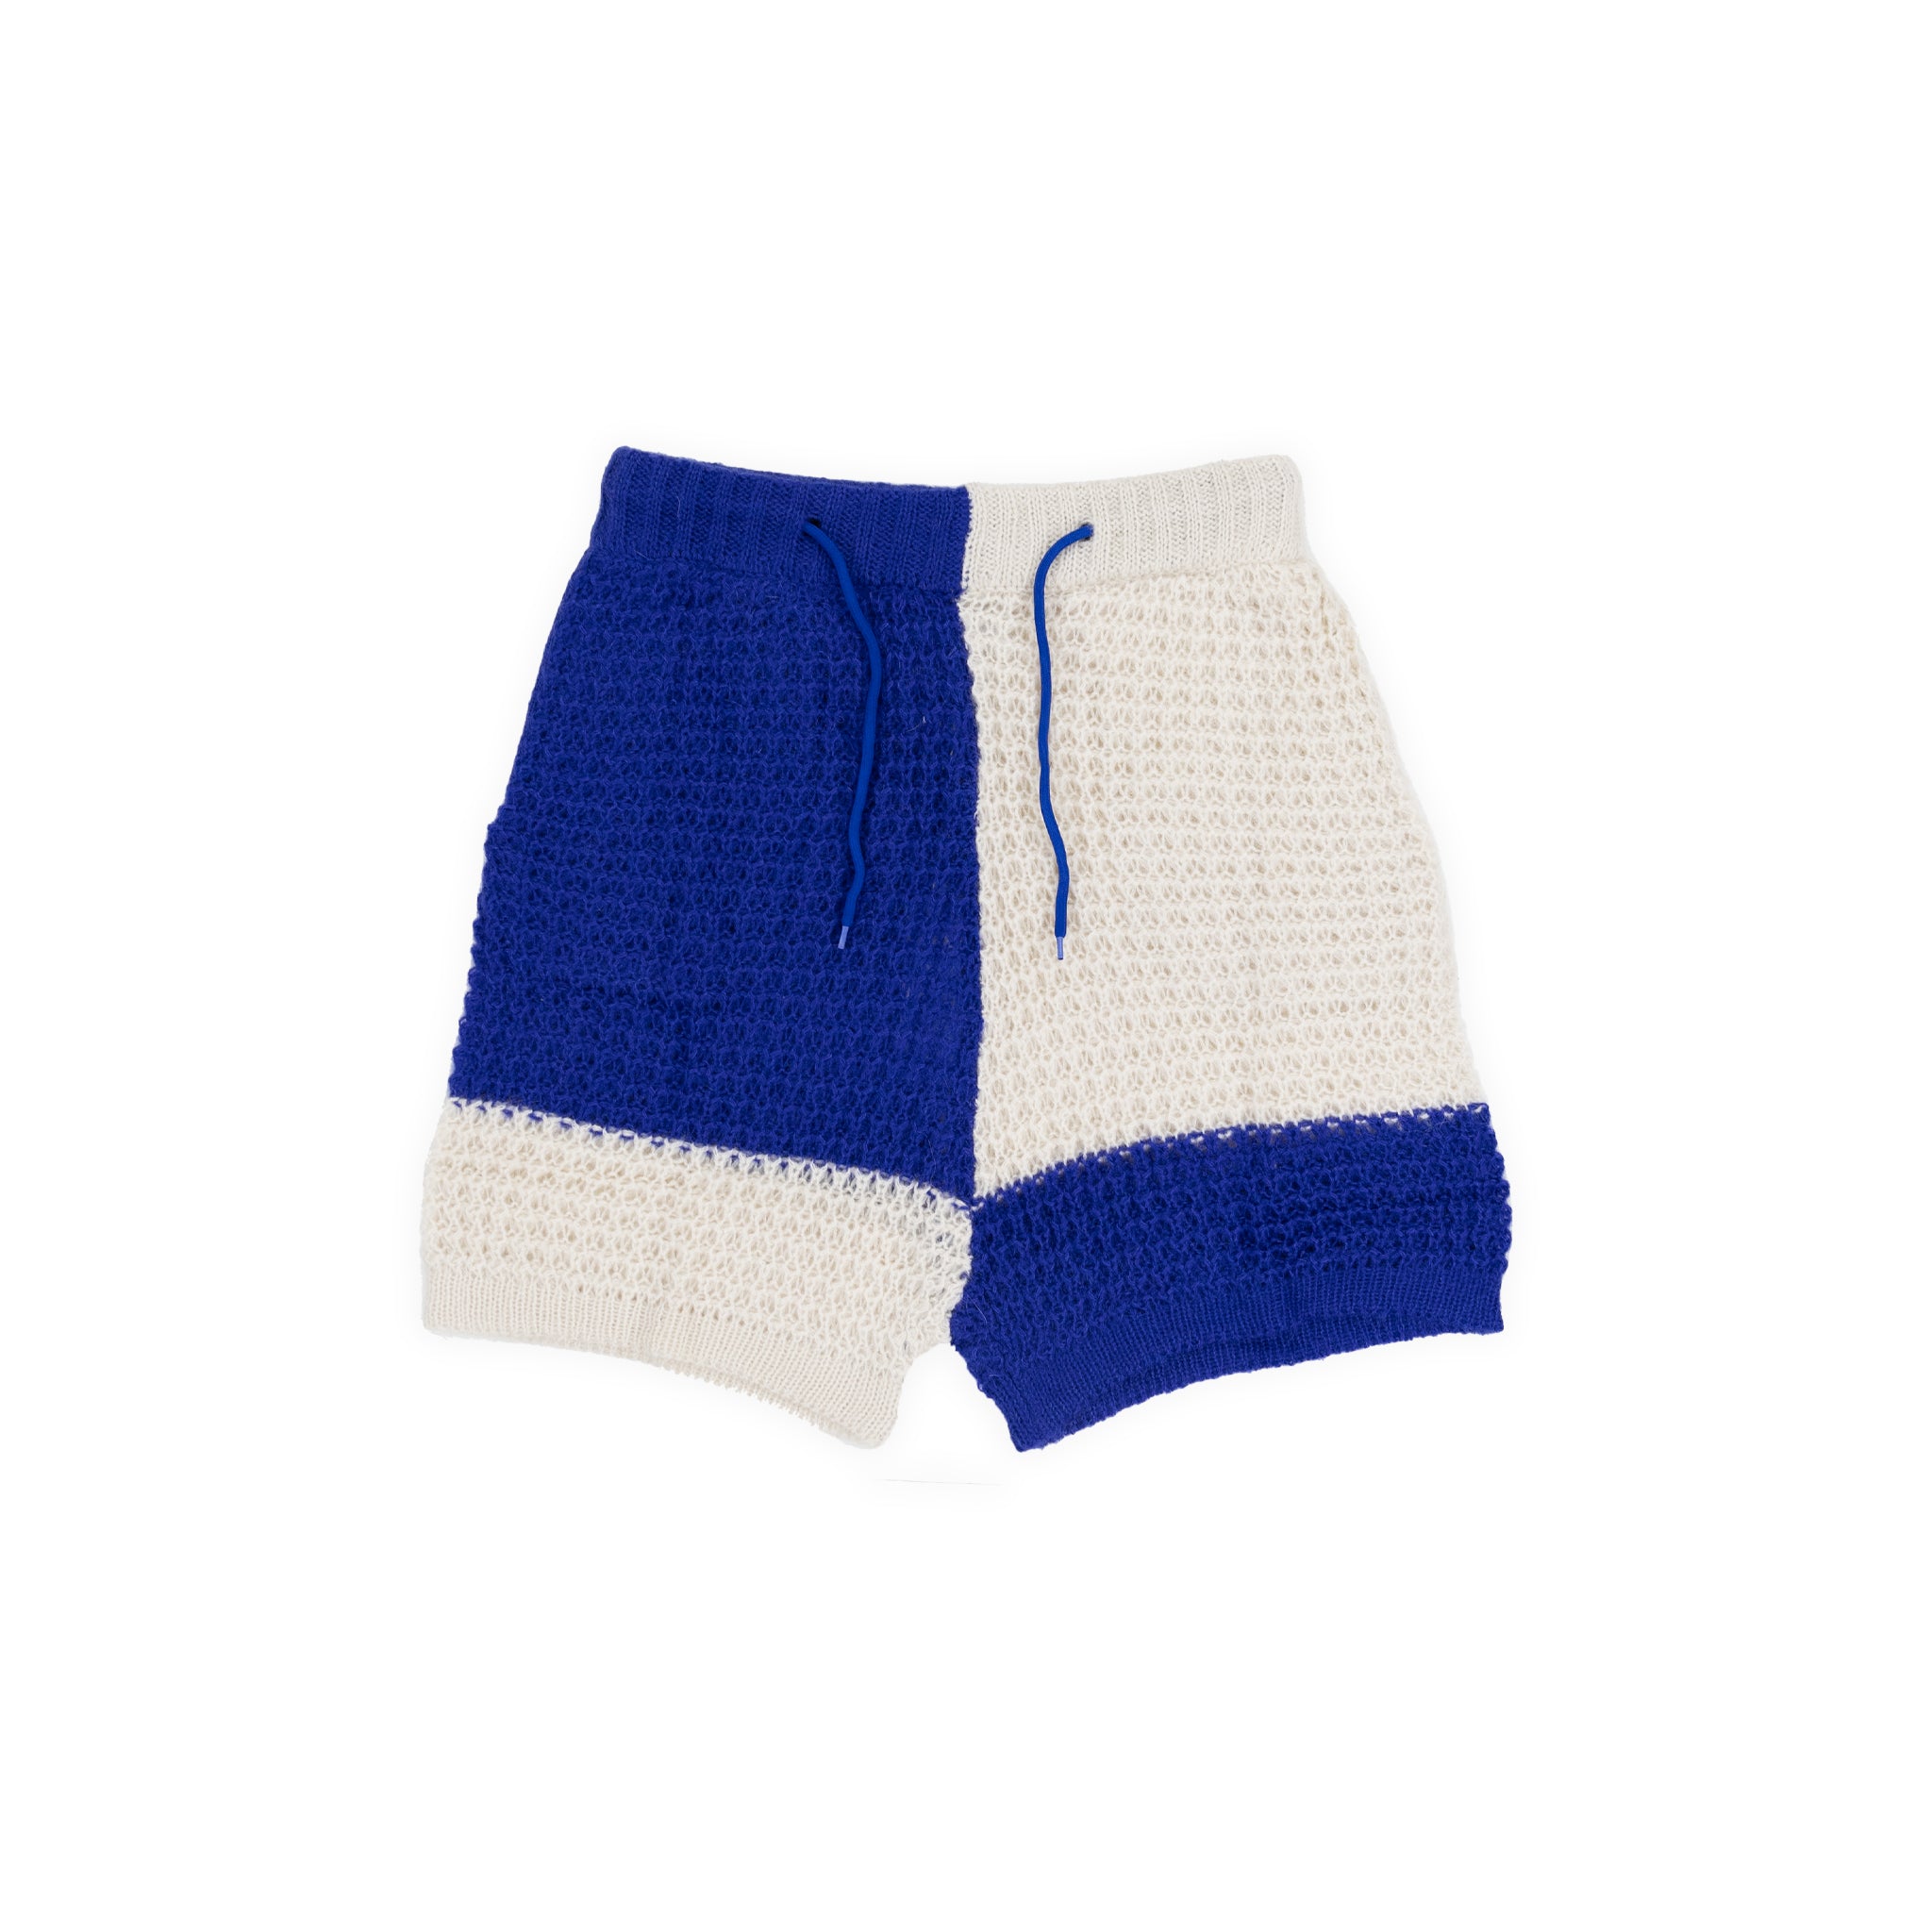 Loose Knit Short - Mohair (BLUE/ECRU)